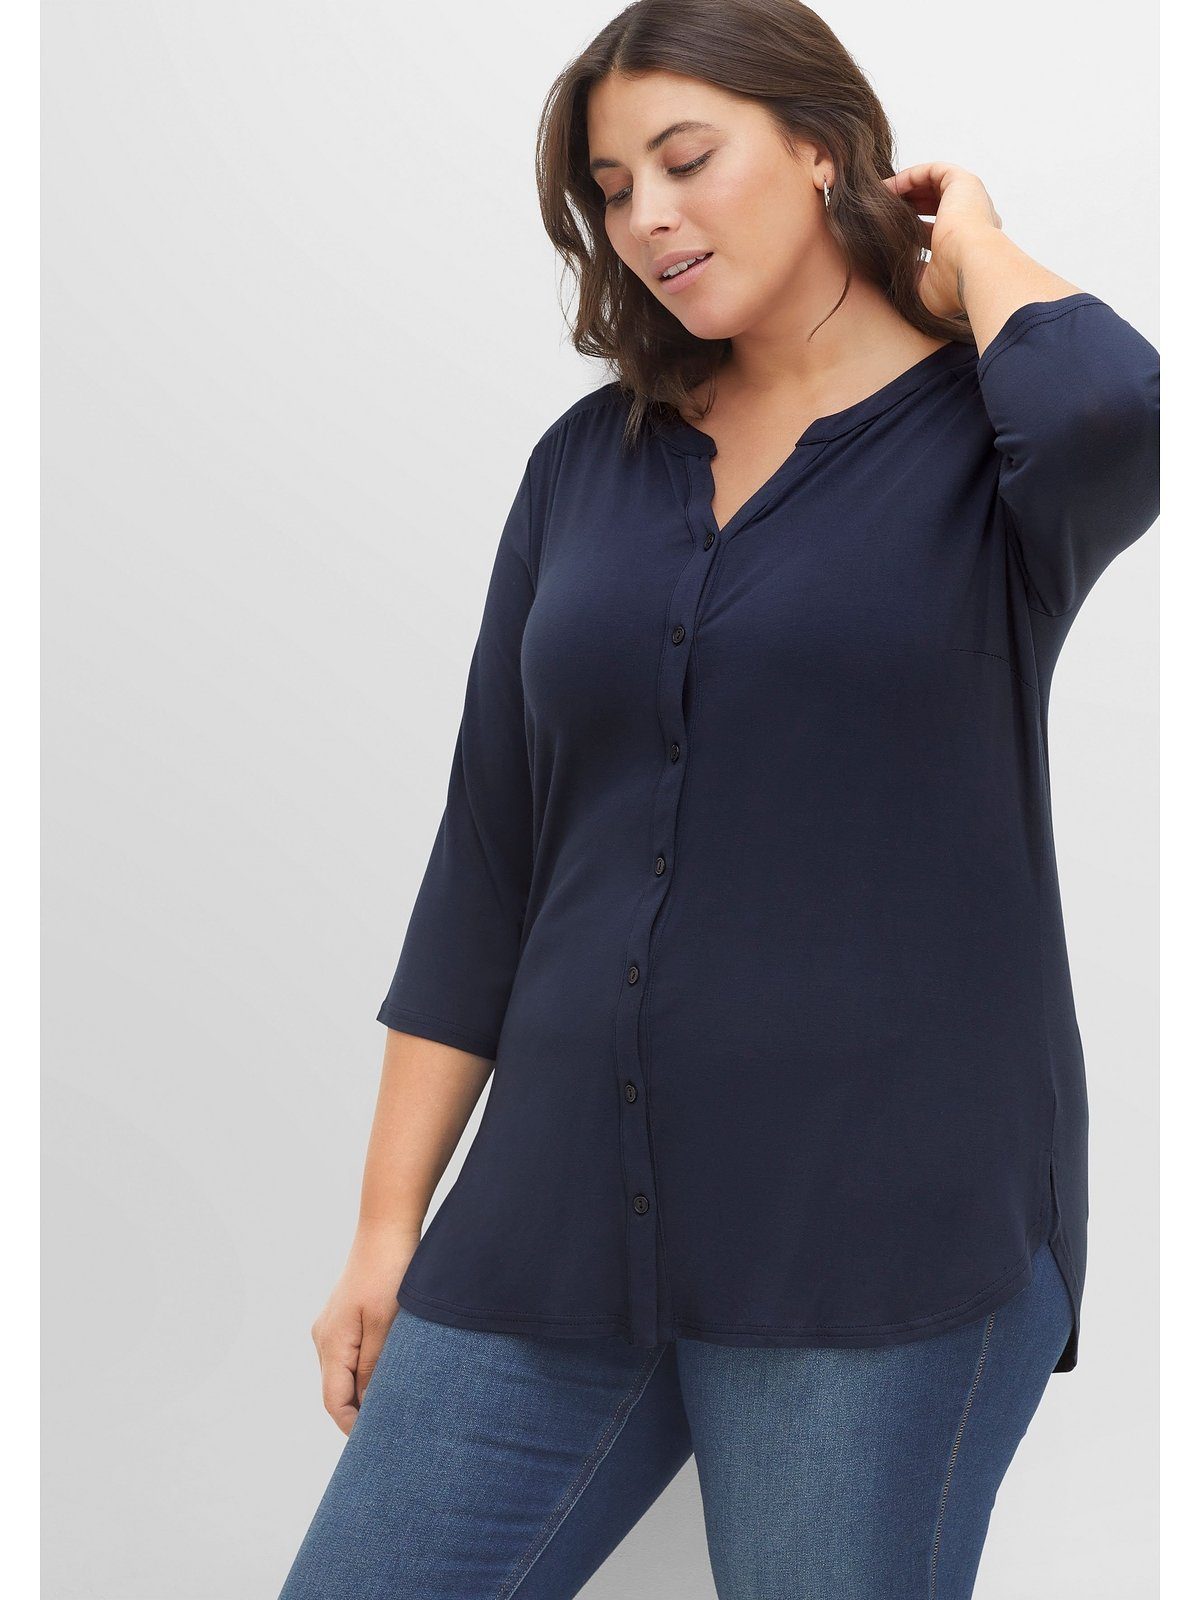 Große Sheego Größen Viskosequalität aus nachtblau fließend-elastischer Blusenshirt